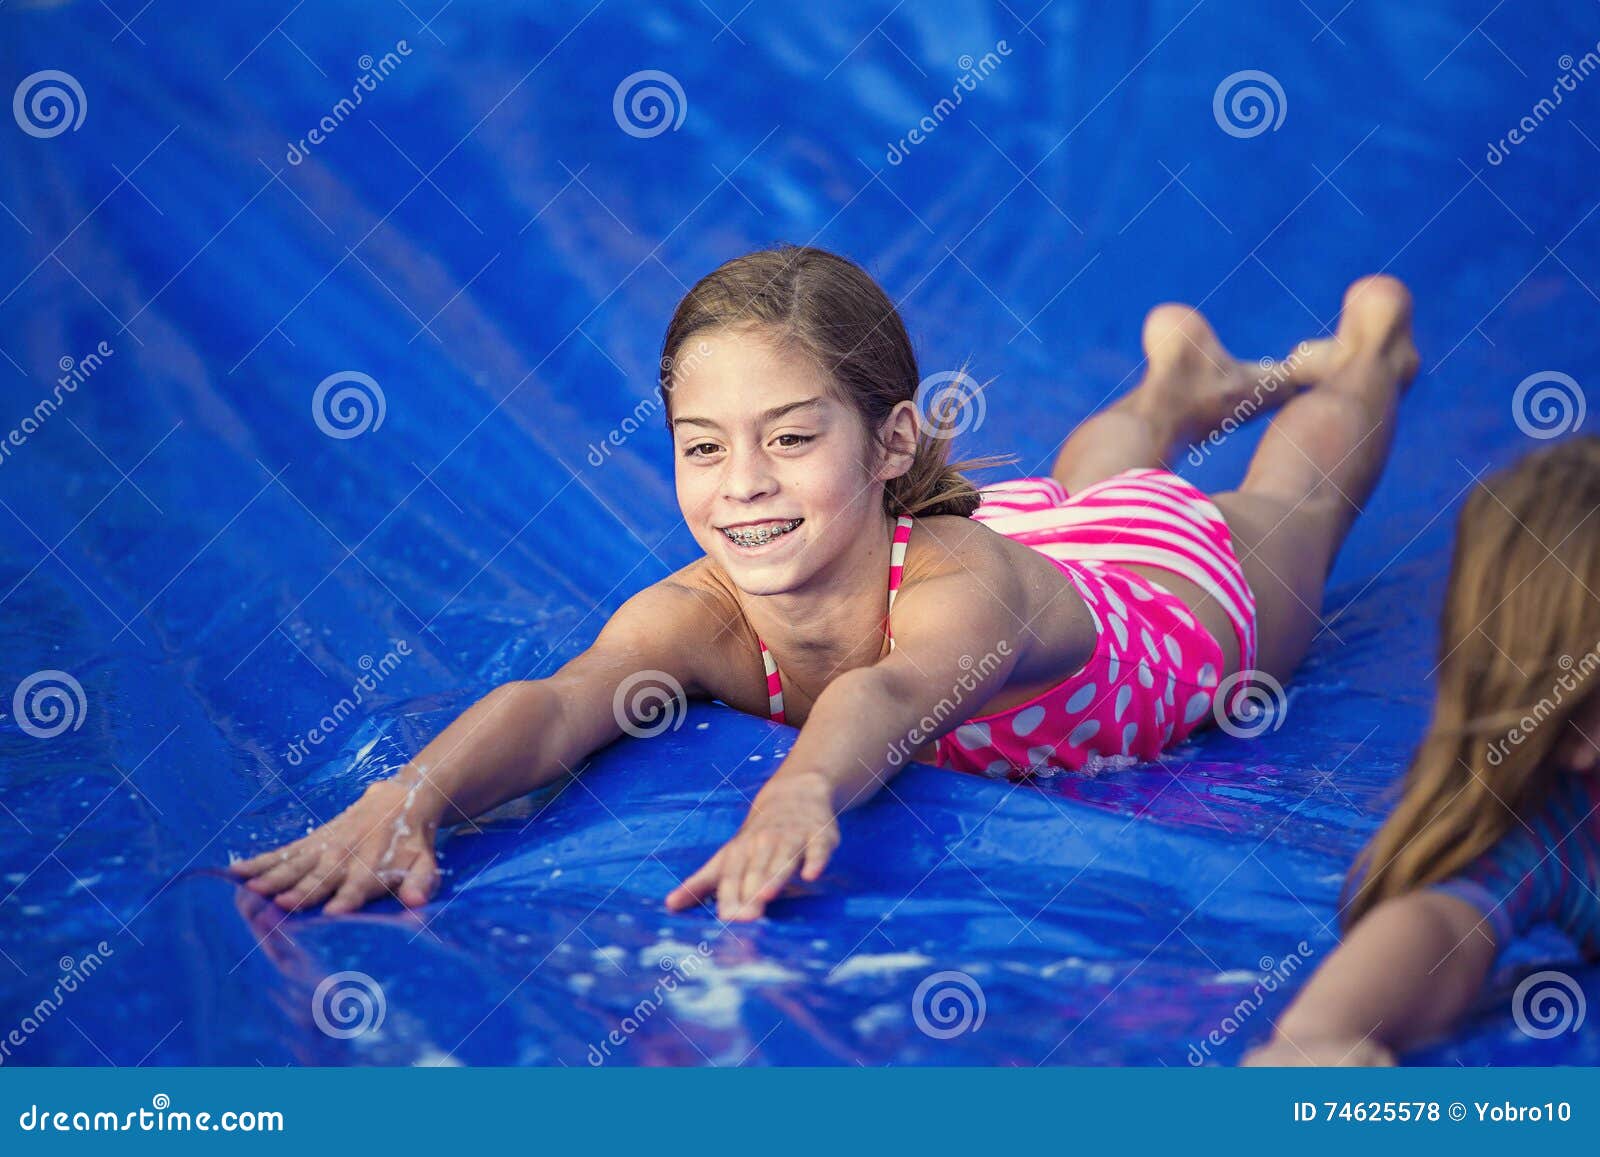 smiling girl sliding down an outdoor slip and slide